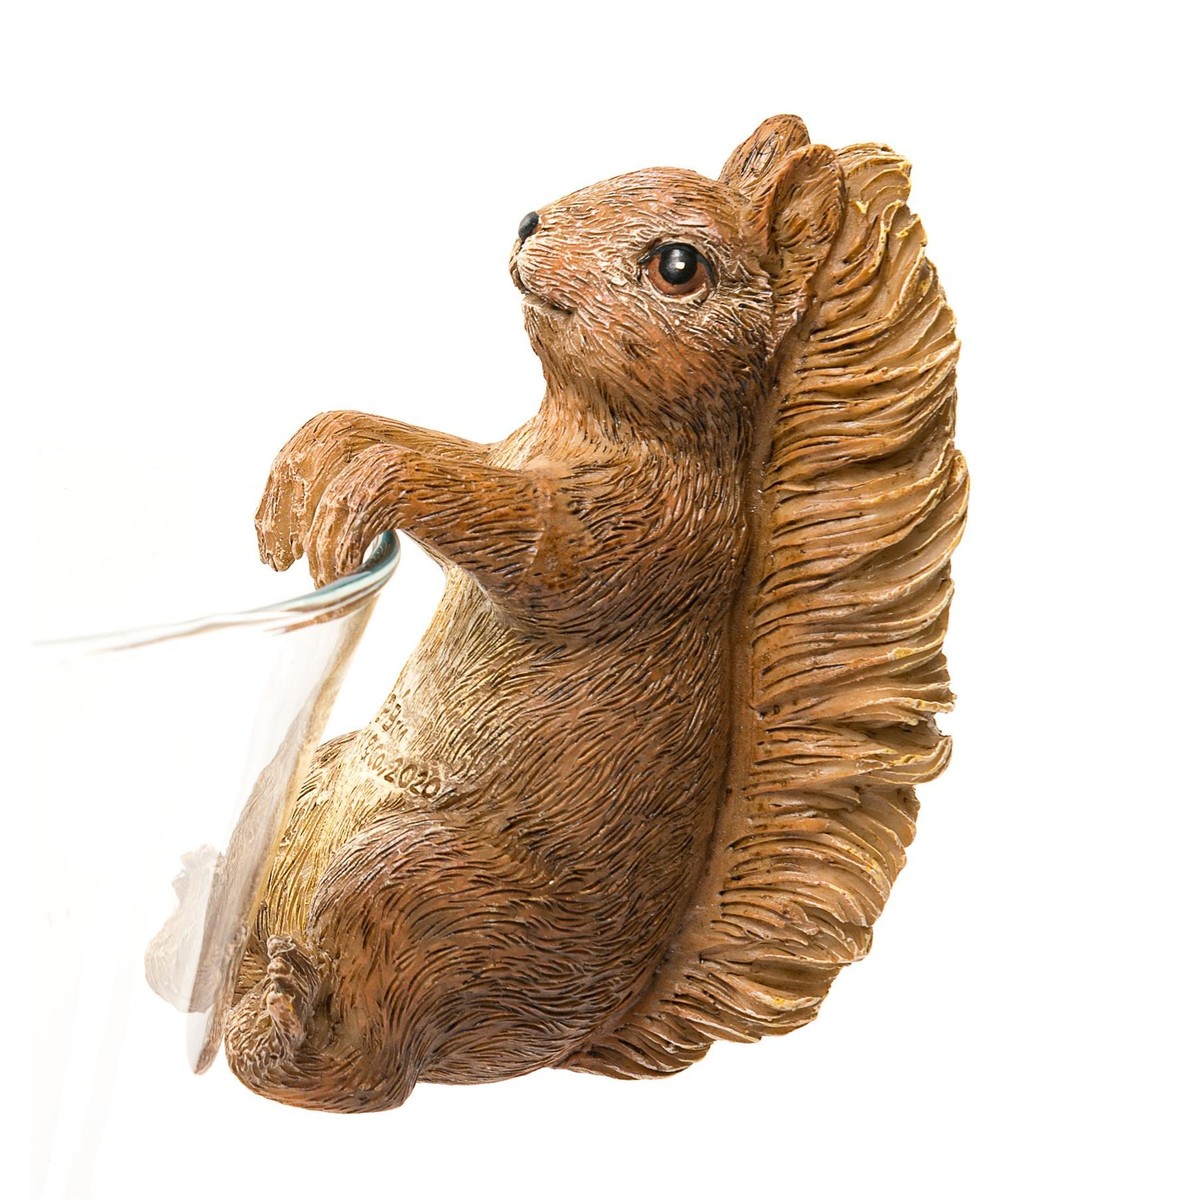  Peter Rabbit Figurines Écureuil Beatrix Potter  5x10x7cm